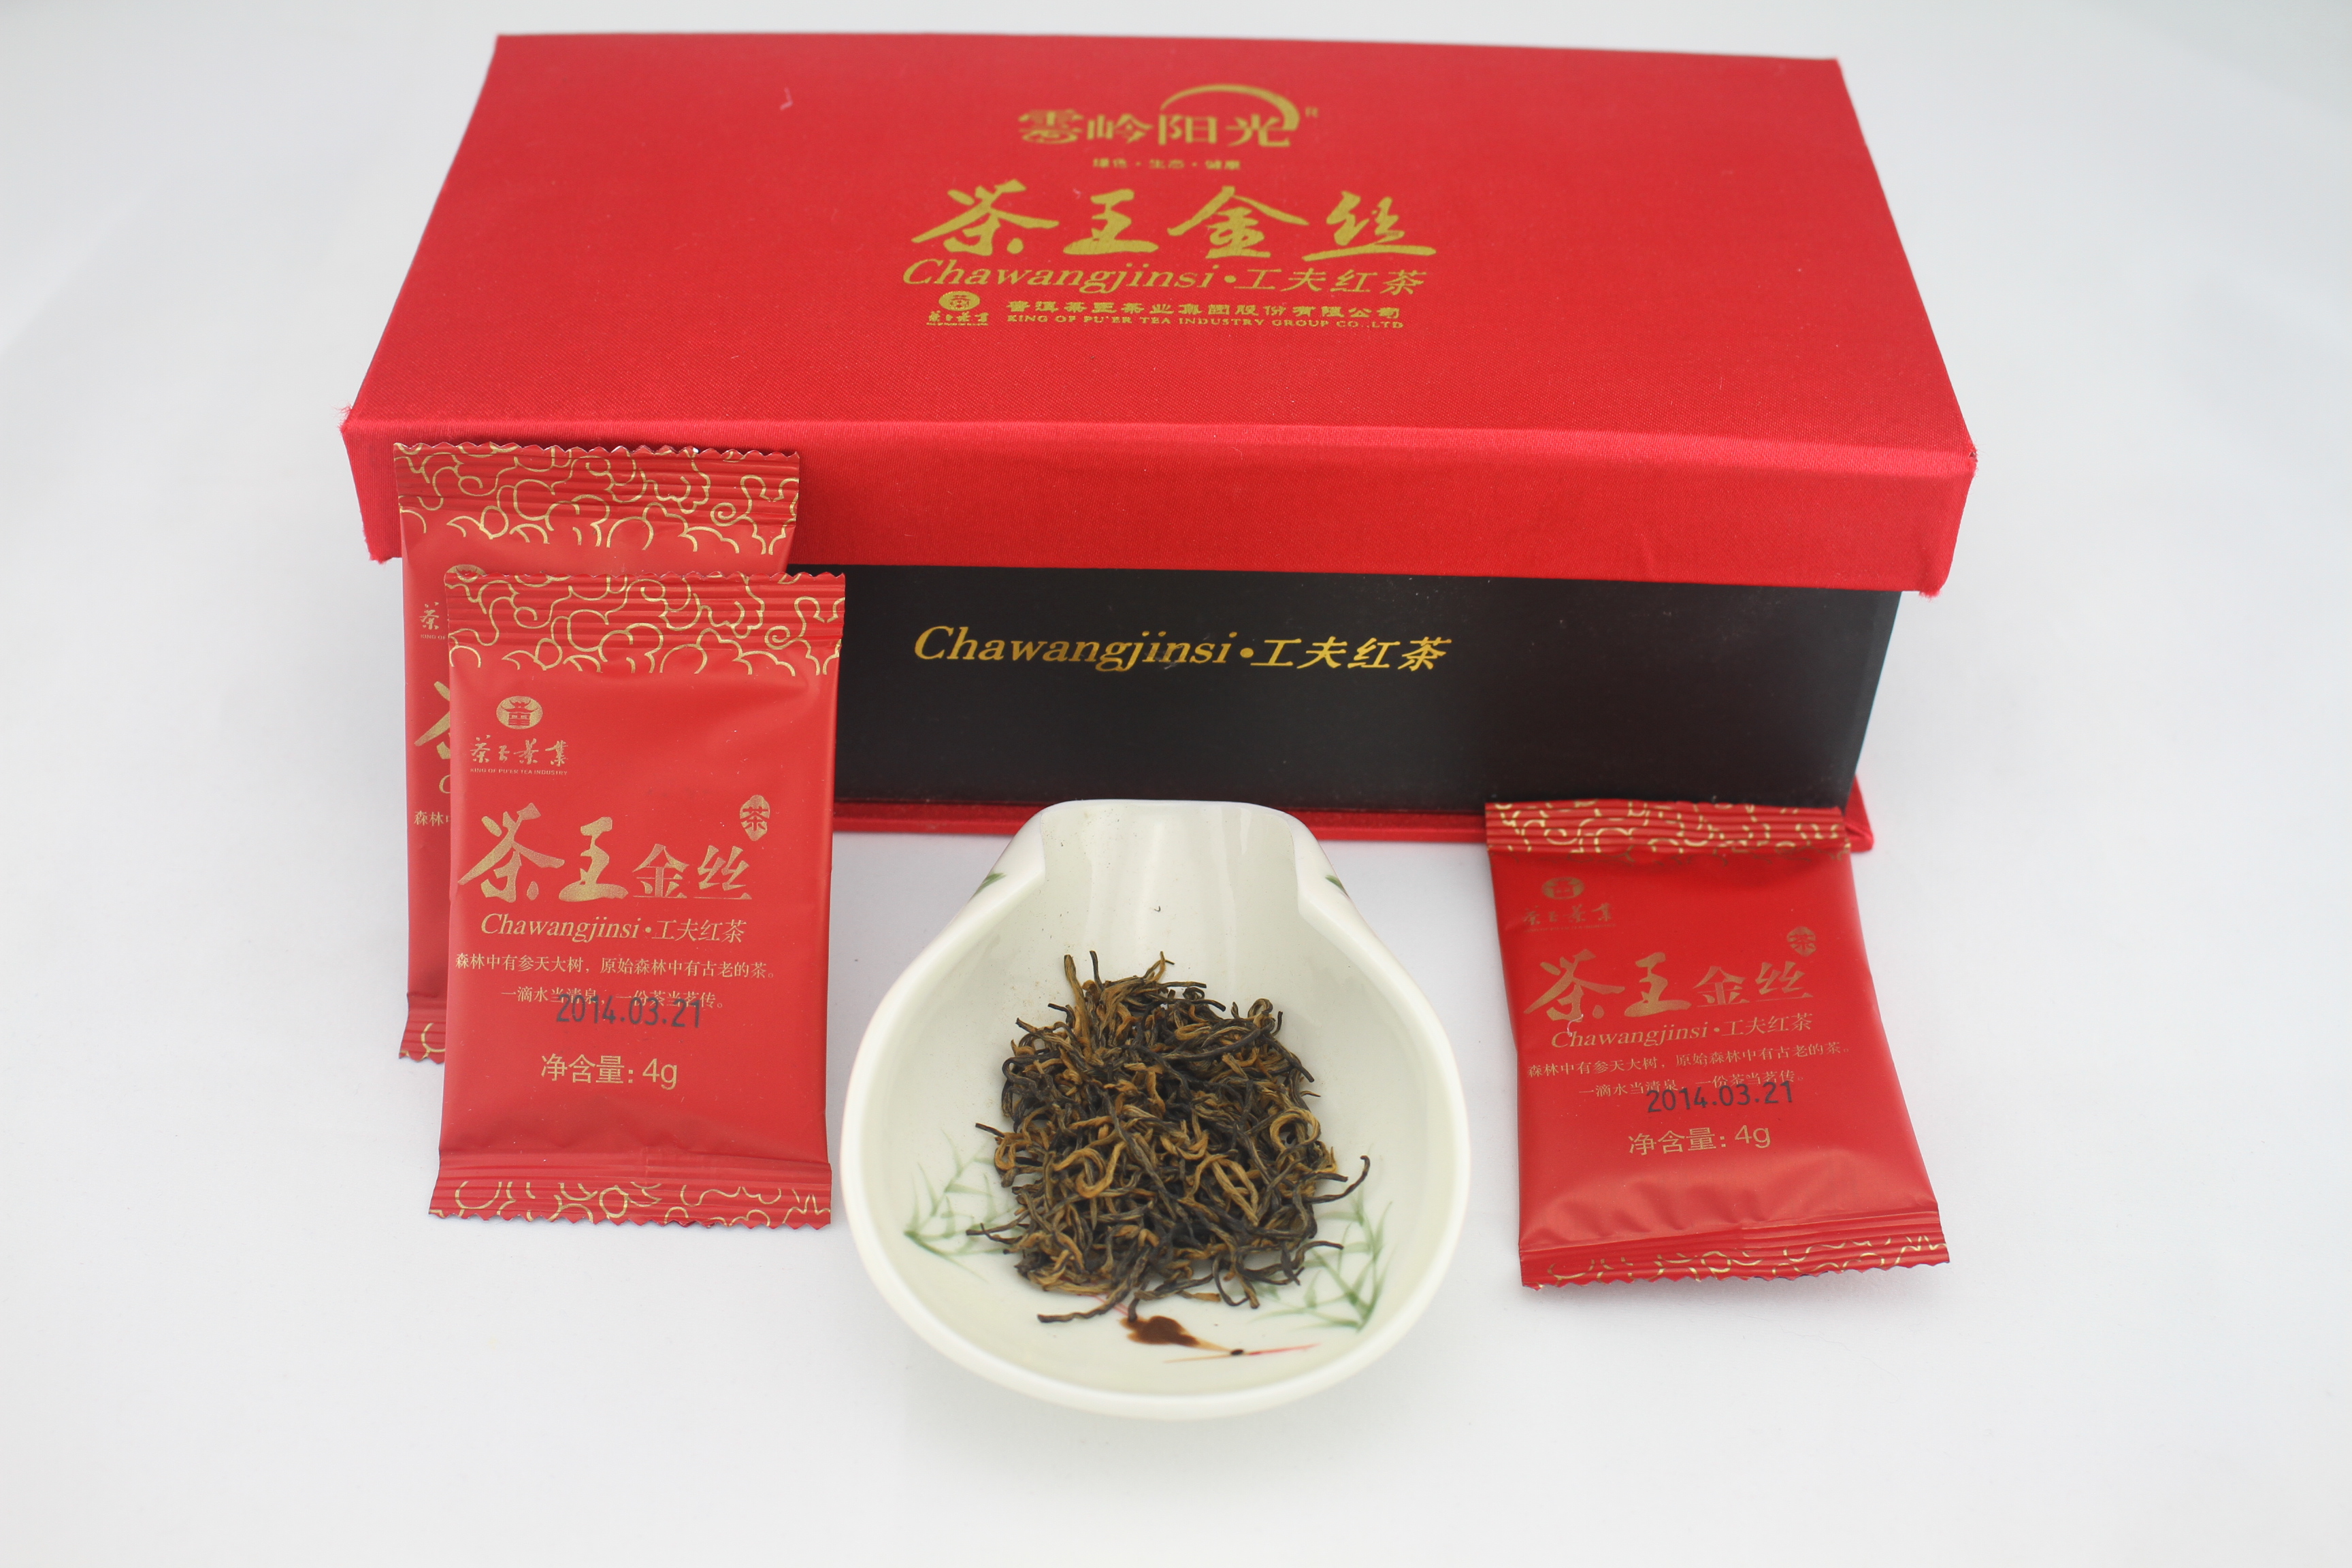 茶王金丝供应商 云南滇红生产商 云南红茶首选茶王